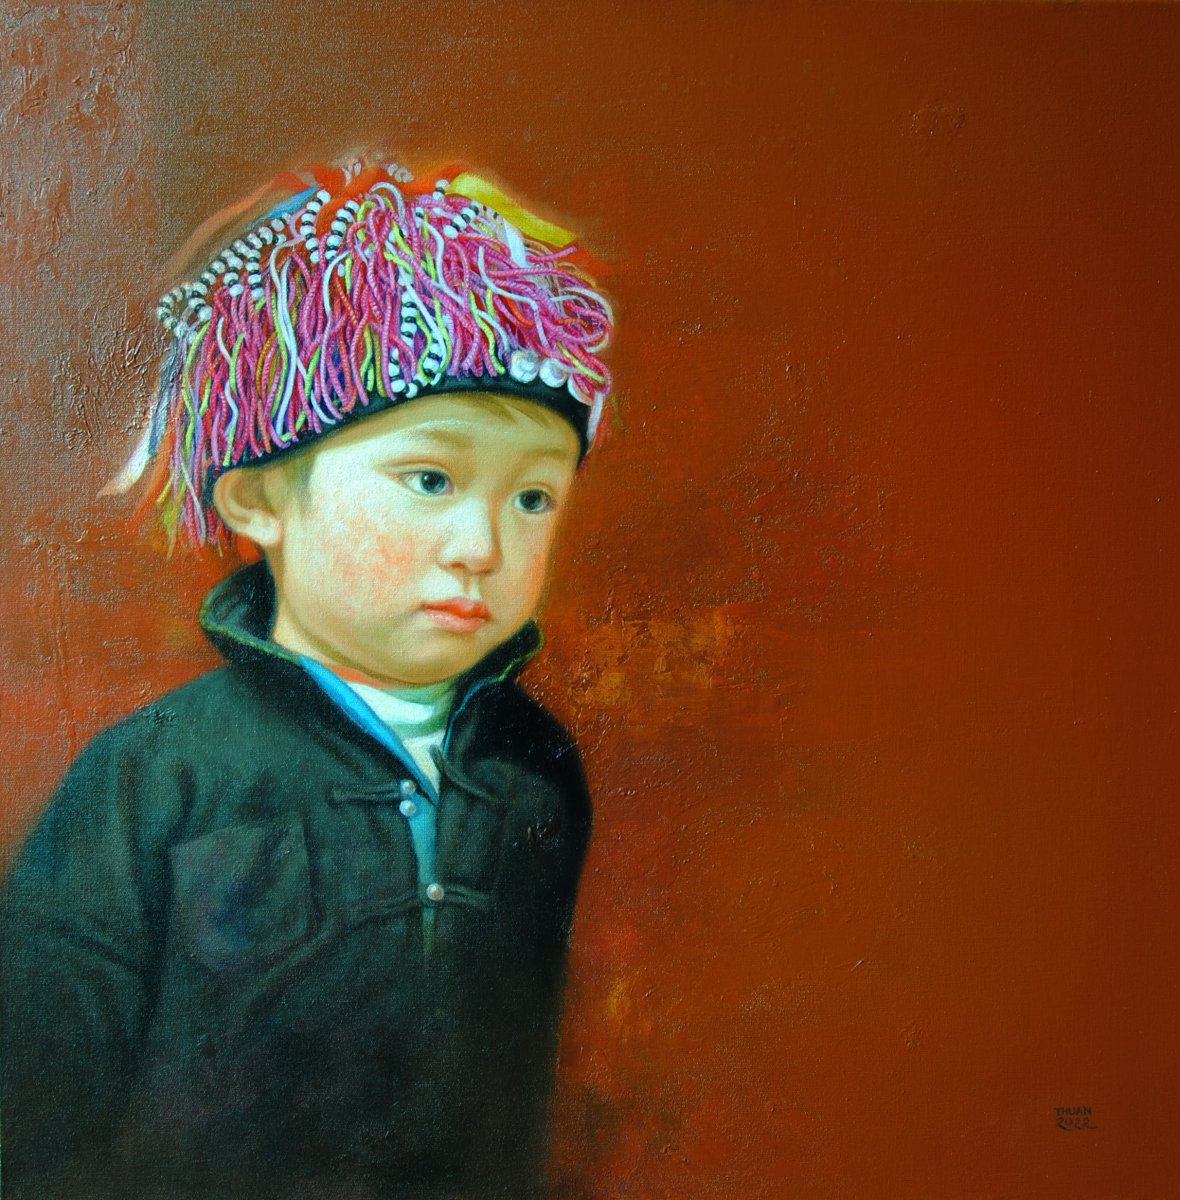 The child in Trúc Sơn - Lê Cù Thuần